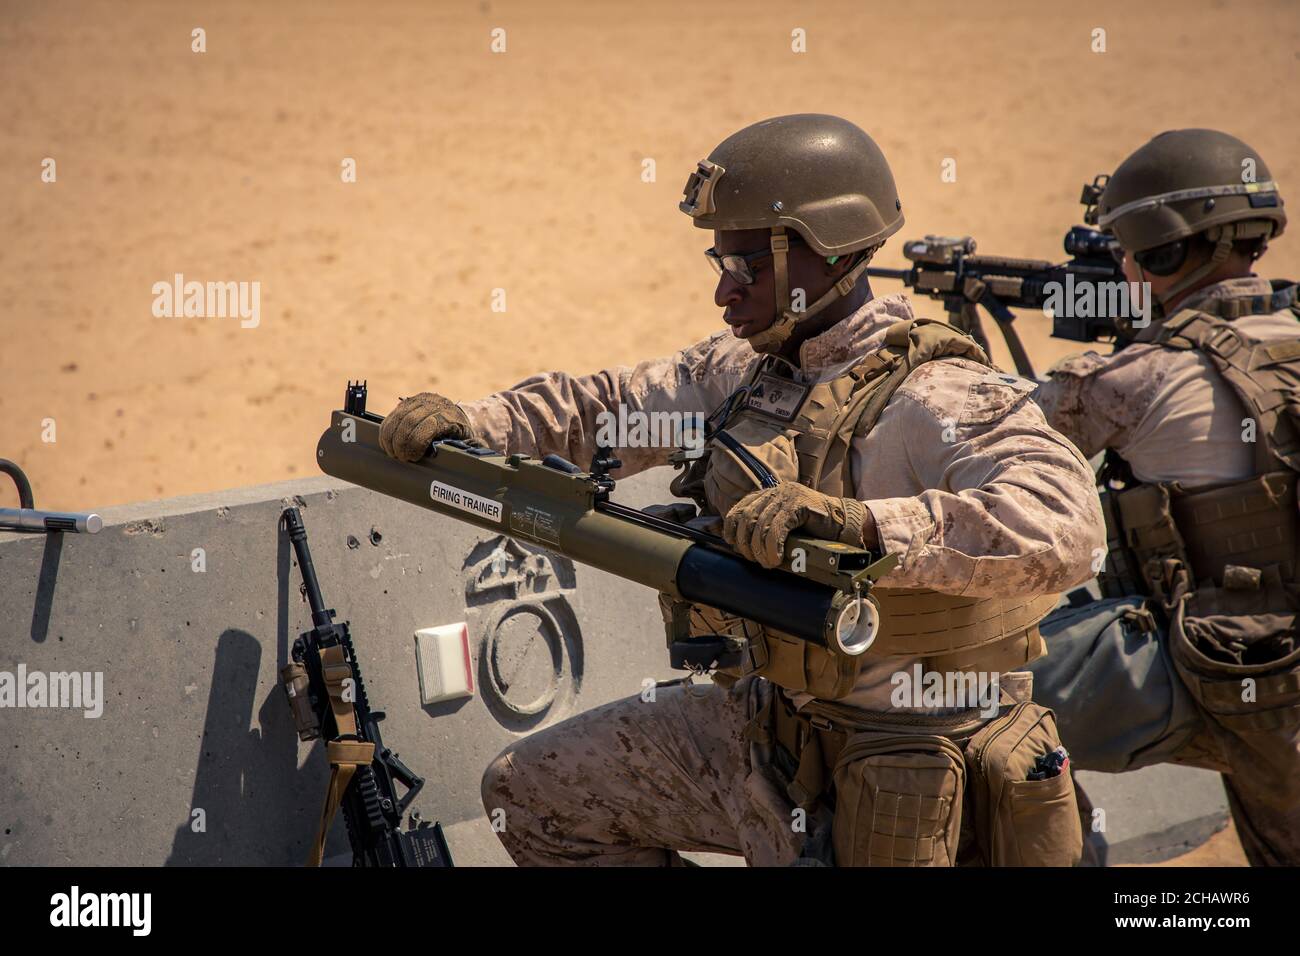 Une Marine américaine avec le 2e Bataillon, 5e Régiment de Marine, affectée à la Force opérationnelle aérienne-terrestre à but spécial intervention de crise - Commandement central 20.2, se prépare à tirer un système d'armes anti-chars légères M72A7 (LAW) pendant une aire de tir anti-armure au Koweït, le 3 septembre 2020. La formation a porté sur l'intégration des capacités anti-armure au niveau des peloons. Le SPMAGTF-CR-CC est une force de réponse aux crises, prête à déployer une variété de capacités dans la région. (É.-U. Photo du corps marin par lance Cpl. Andrew Skiver) Banque D'Images